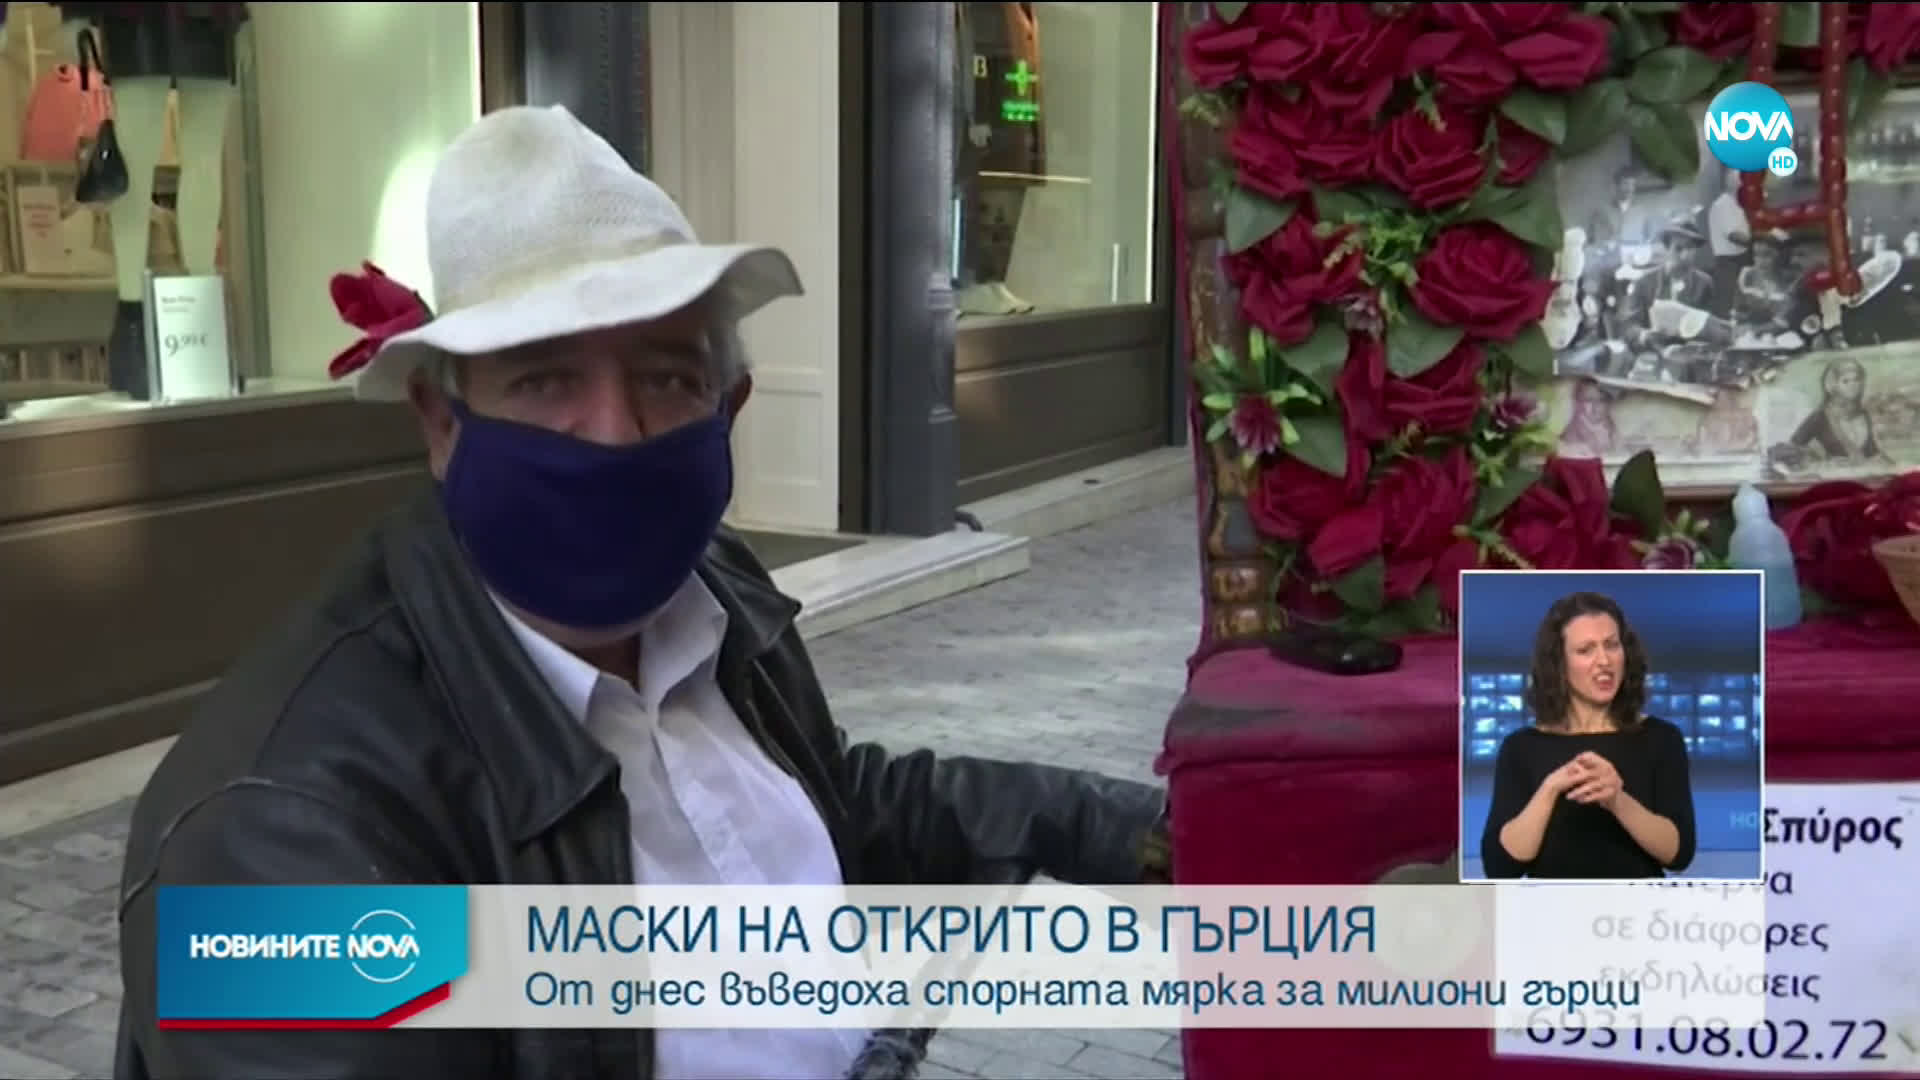 ОТ ДНЕС: И в Гърция започнаха да ходят с маски на открито